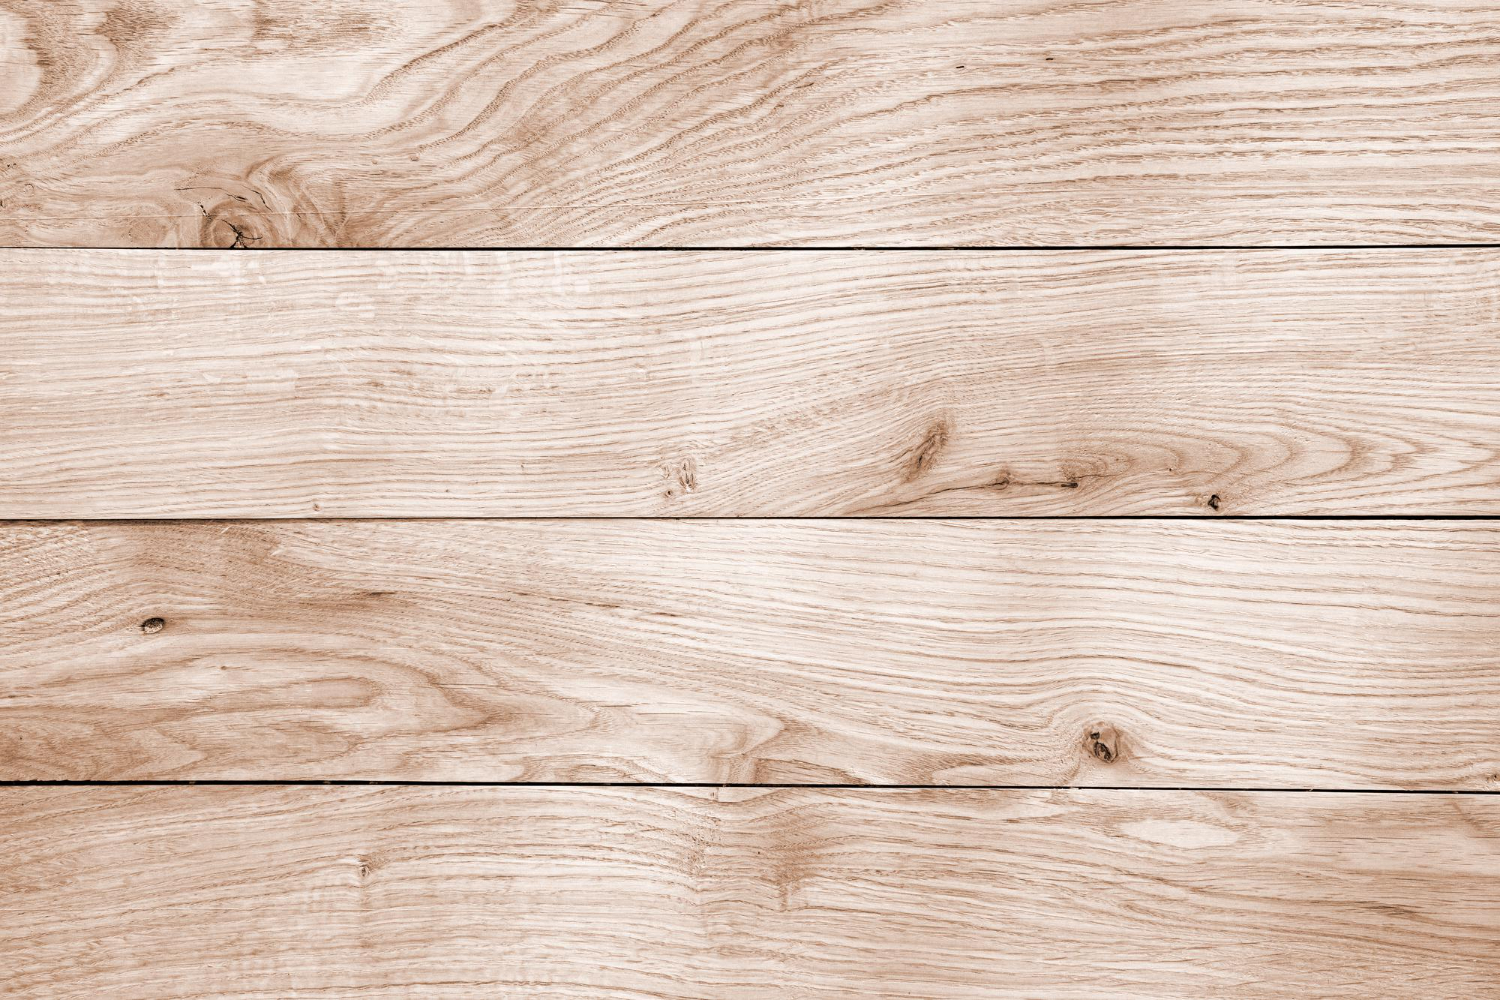 Prawidłowy montaż drewnianej podłogi wymaga doświadczenia, wiedzy oraz oczywiście niezawodnego sprzętu. Warto w tej kwestii zaufać fachowcom